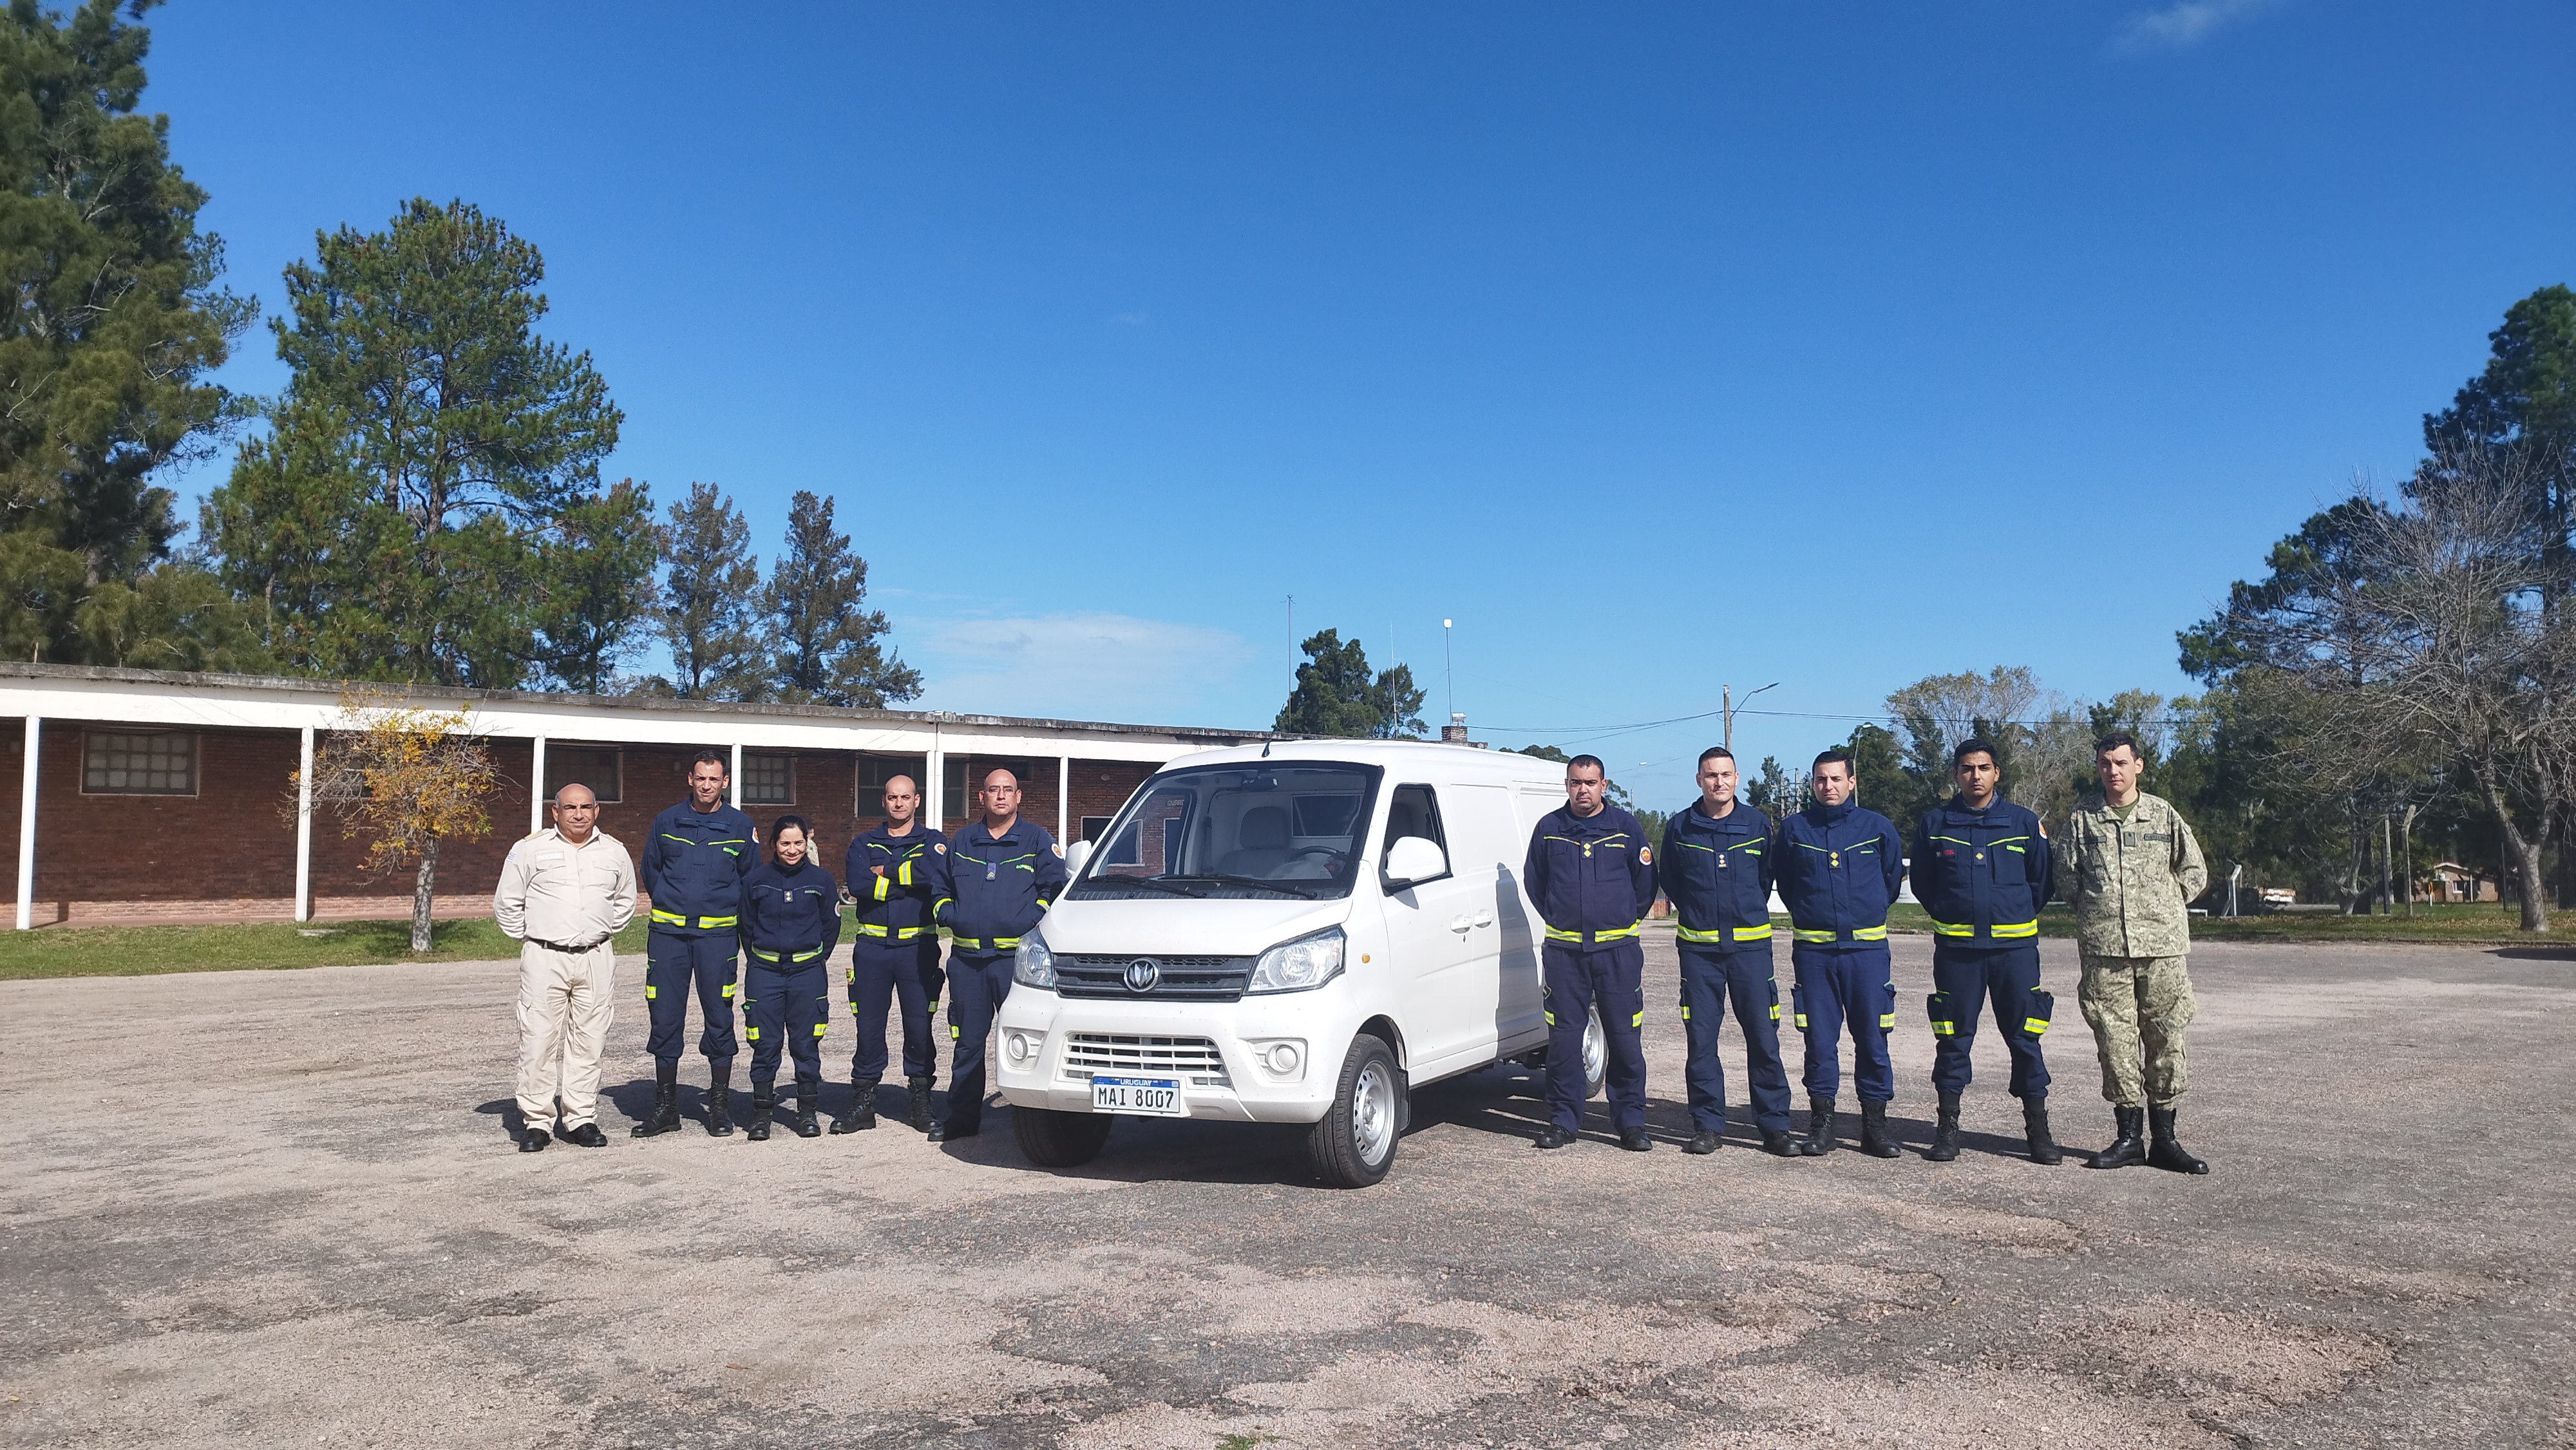 IMG_20230511_133935.jpg - El pasado jueves 11 de mayo culminó la &#034;Capacitación para bomberos sobre manejo de incidentes relacionados con la movilidad eléctrica&#034; en donde se capacitaron a 25 bomberos en la Base Aérea de Santa Bernardina del departamento de Durazno. Esta capacitación es la continuación del primer curso regional que organizó la plataforma MOVE del Programa de la Naciones Unidas para el Medio Ambiente a finales de 2022 en Paraguay, donde participaron y se formaron dos bomberos instructores de Uruguay.